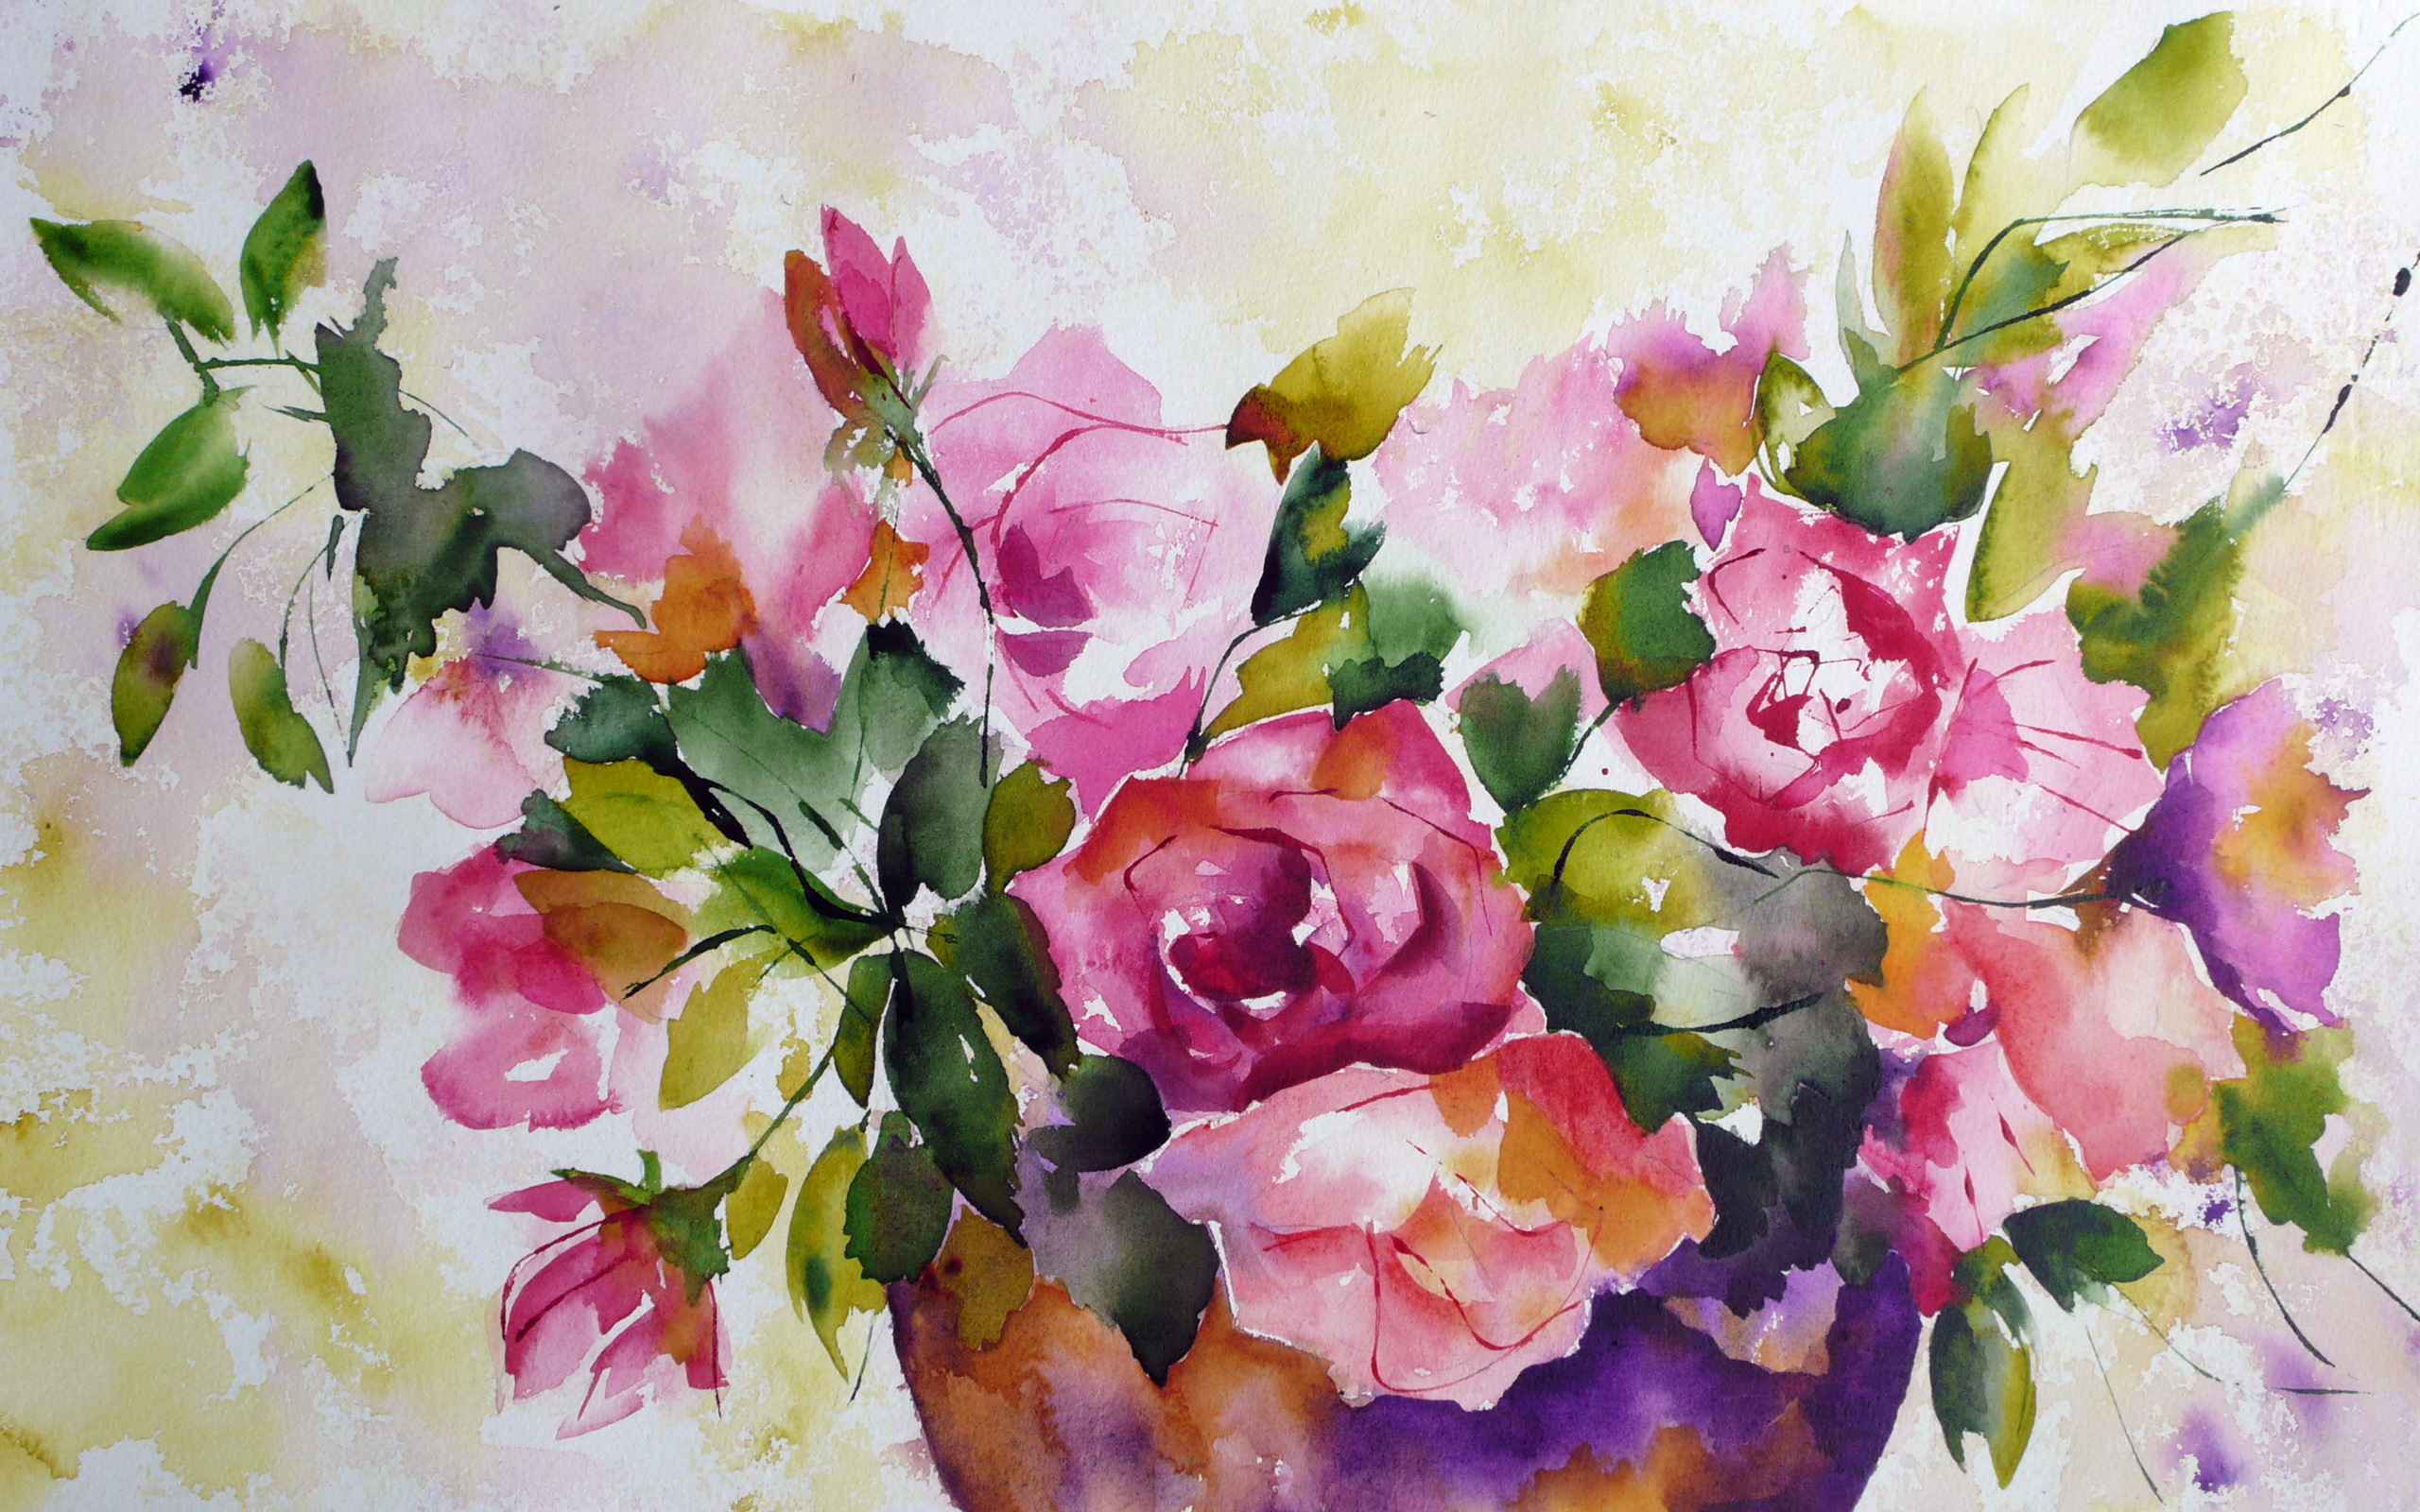 Download 38+ Watercolor Flowers Wallpaper on WallpaperSafari